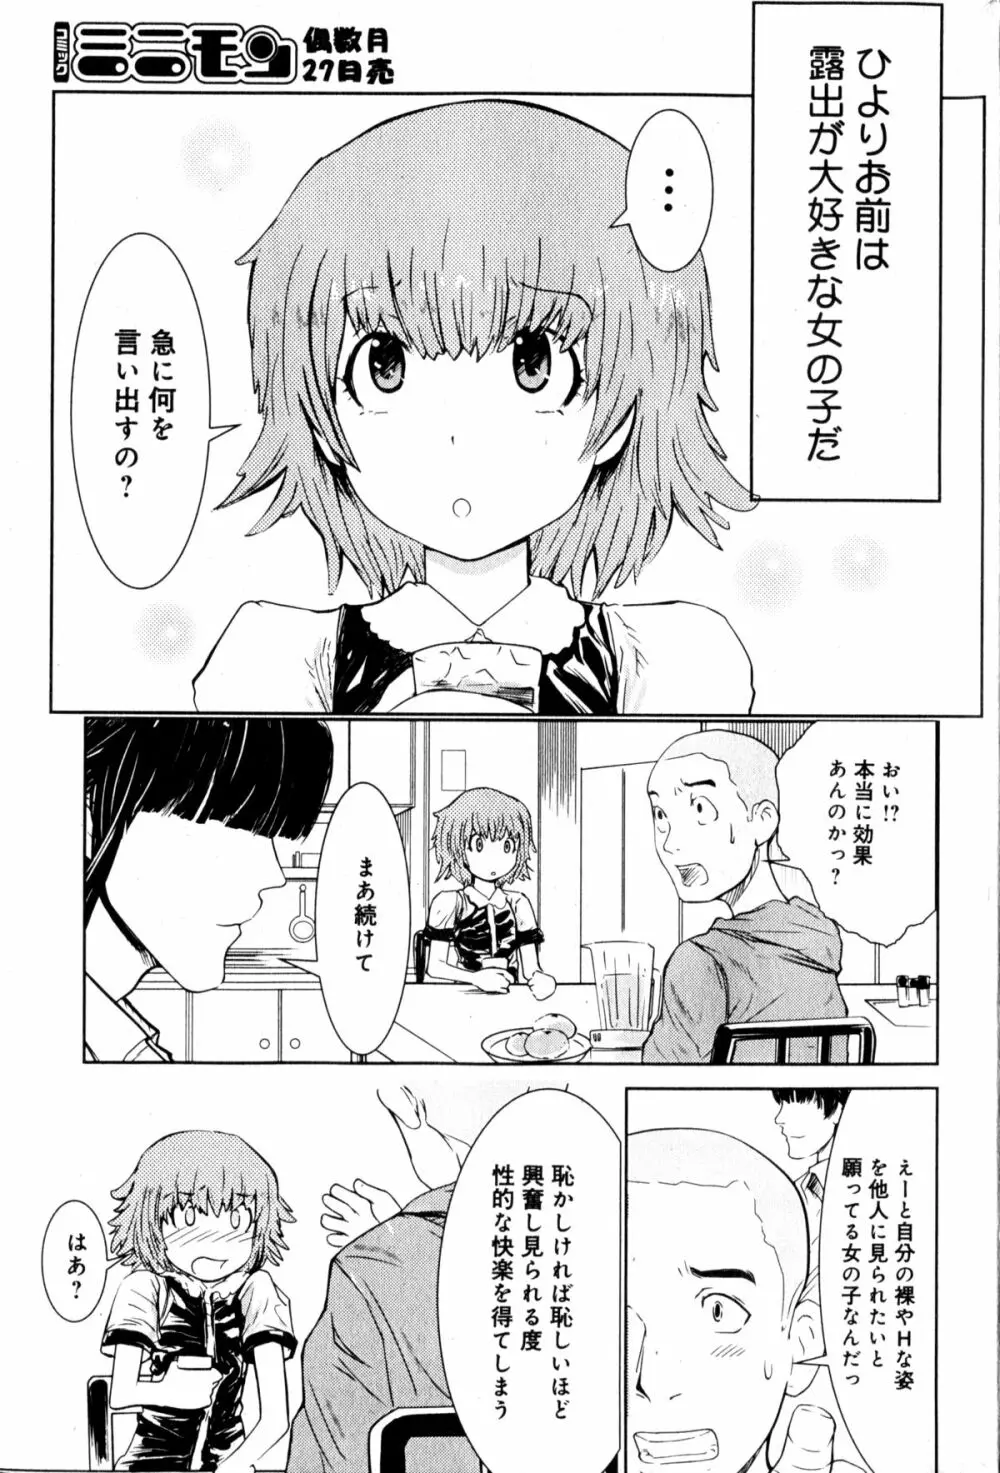 Hiyori Tadaima Roshutsu Naka [Hiyori's coming home a streaker] 1-2 (JAP) Page.2